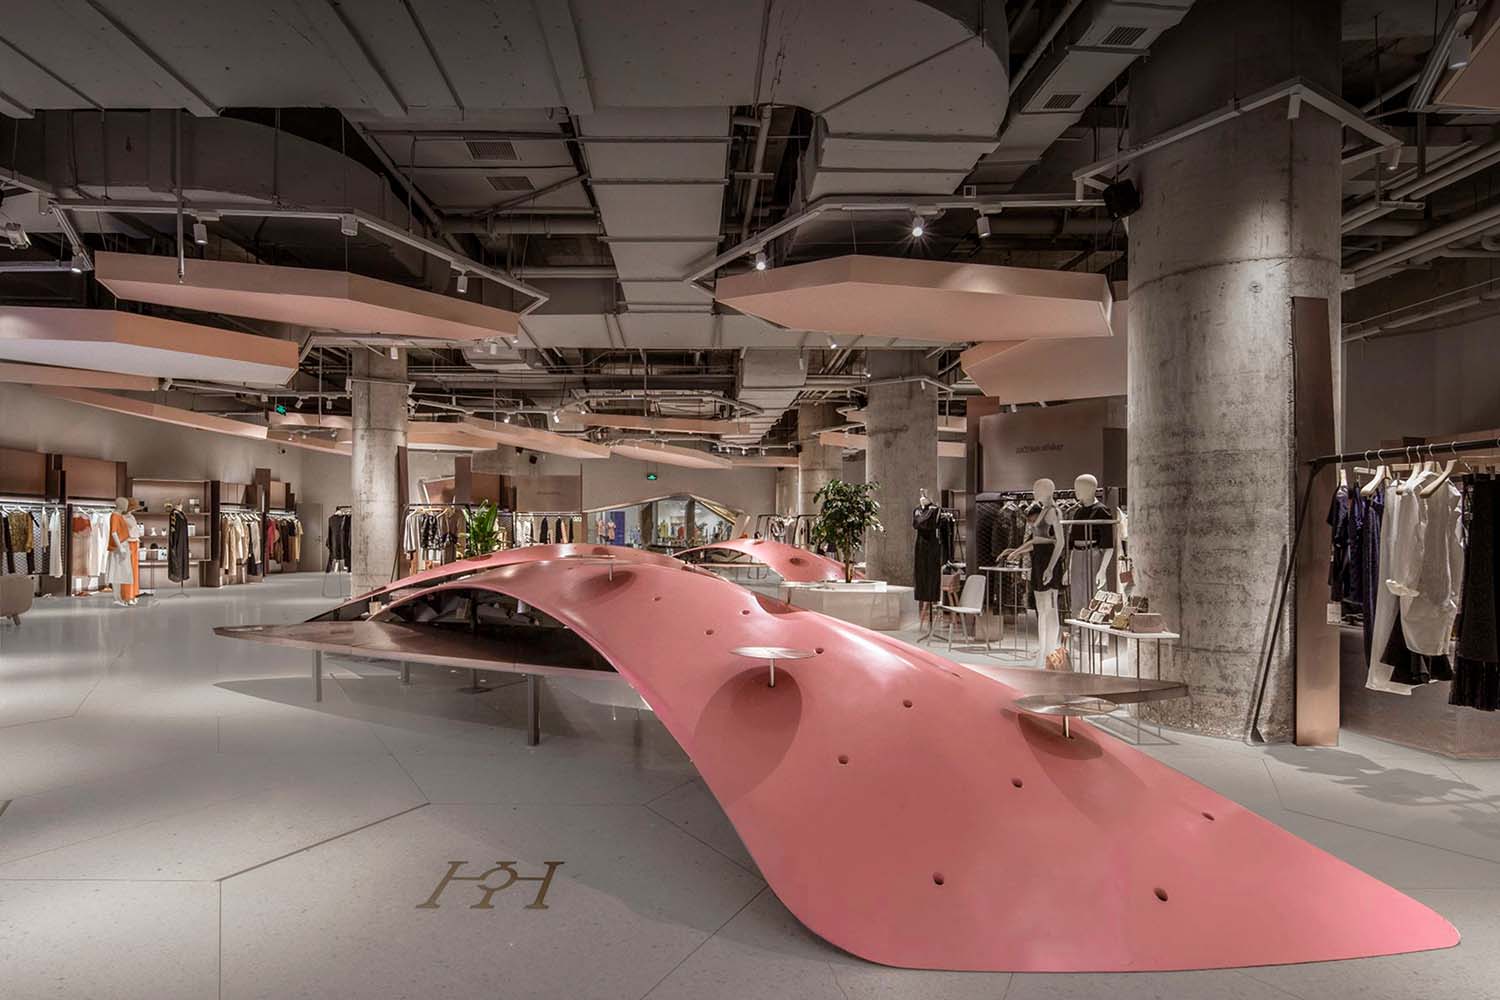 由spacum设计的Hch时装精品店是2020 - 2021年室内空间和展览设计类的冠军。